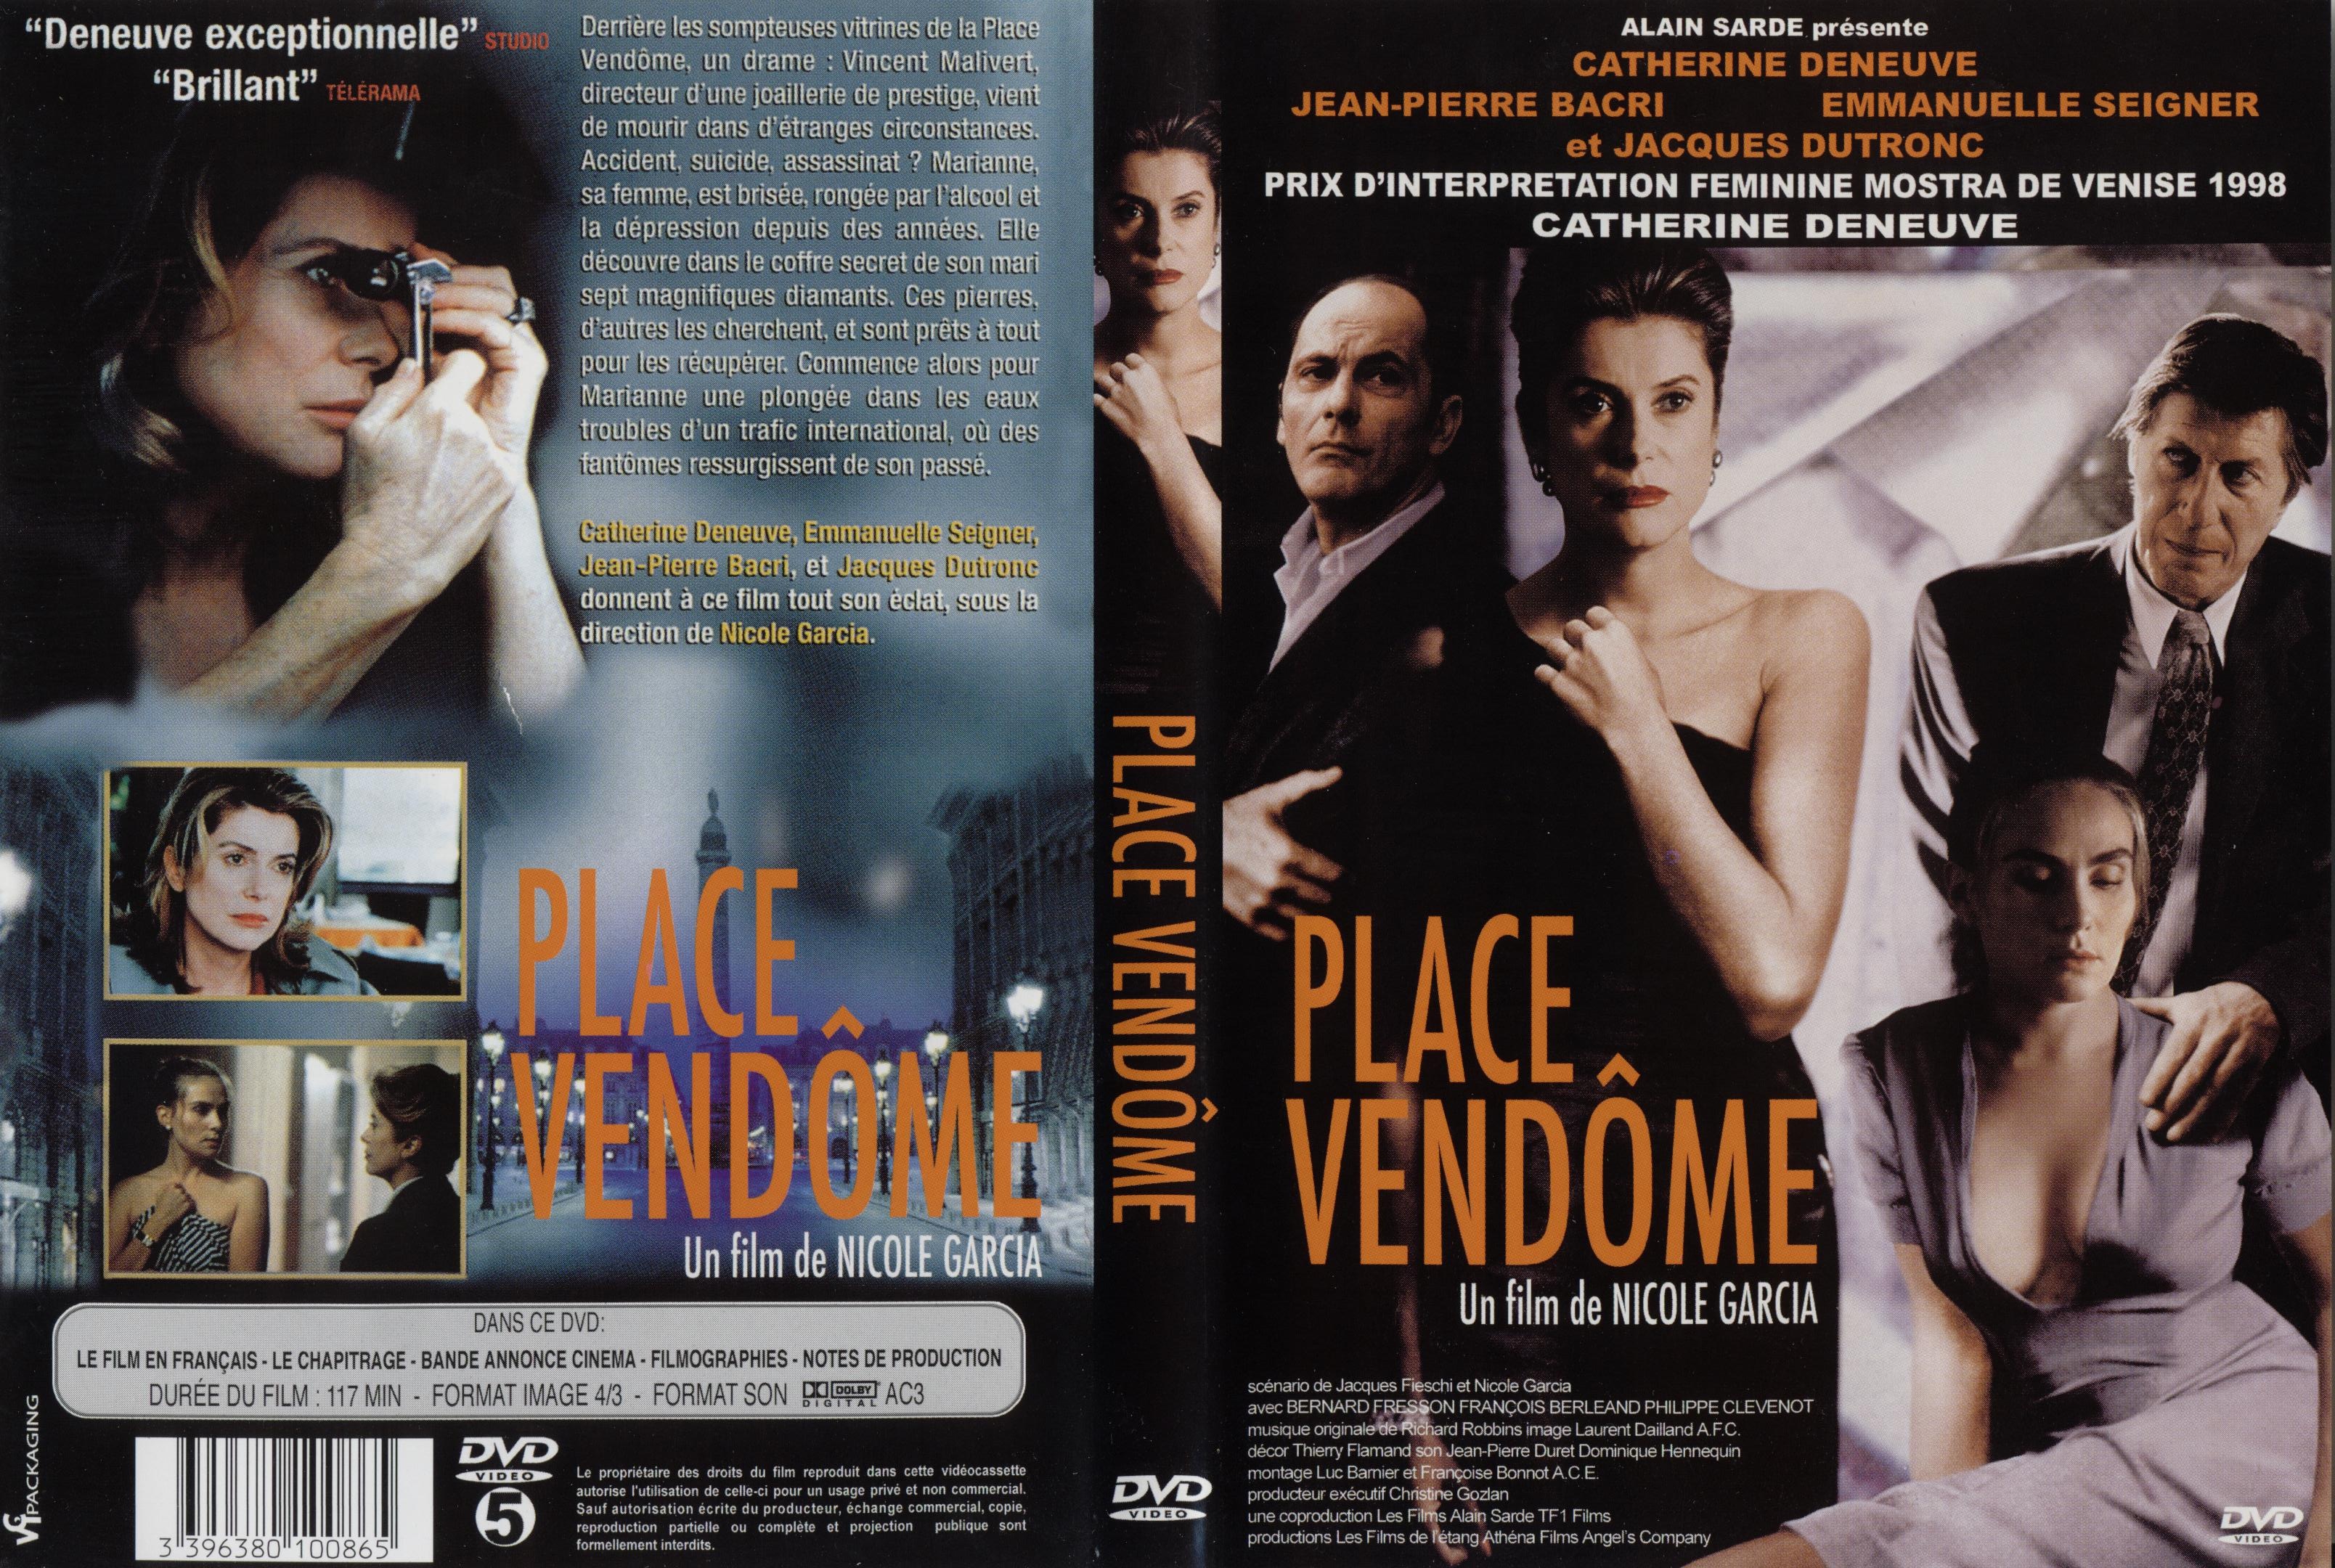 Jaquette DVD Place Vendome